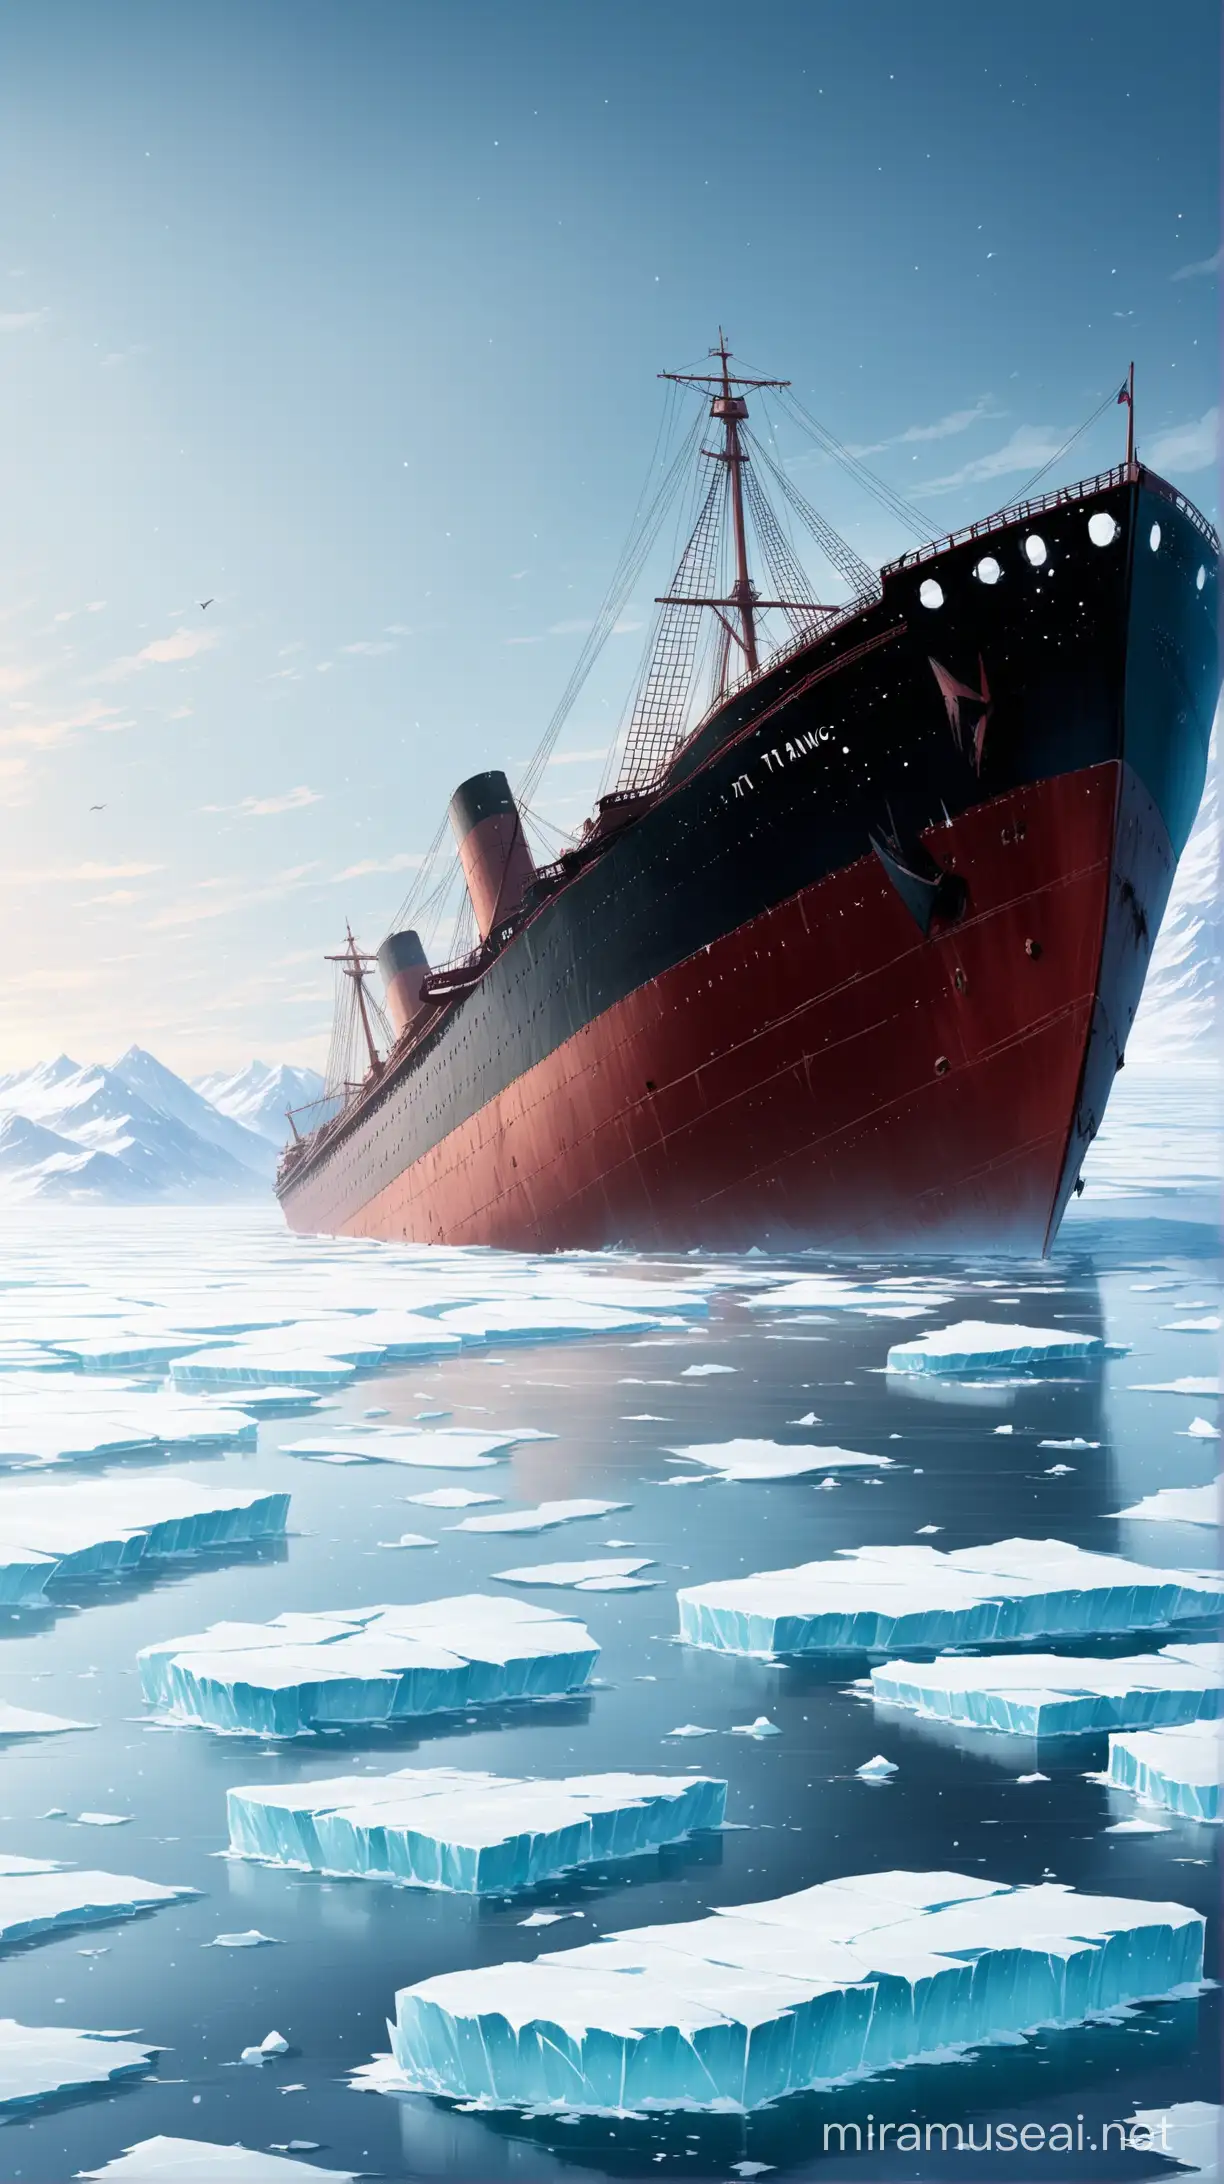 Taitanic ship crashes on ice barde